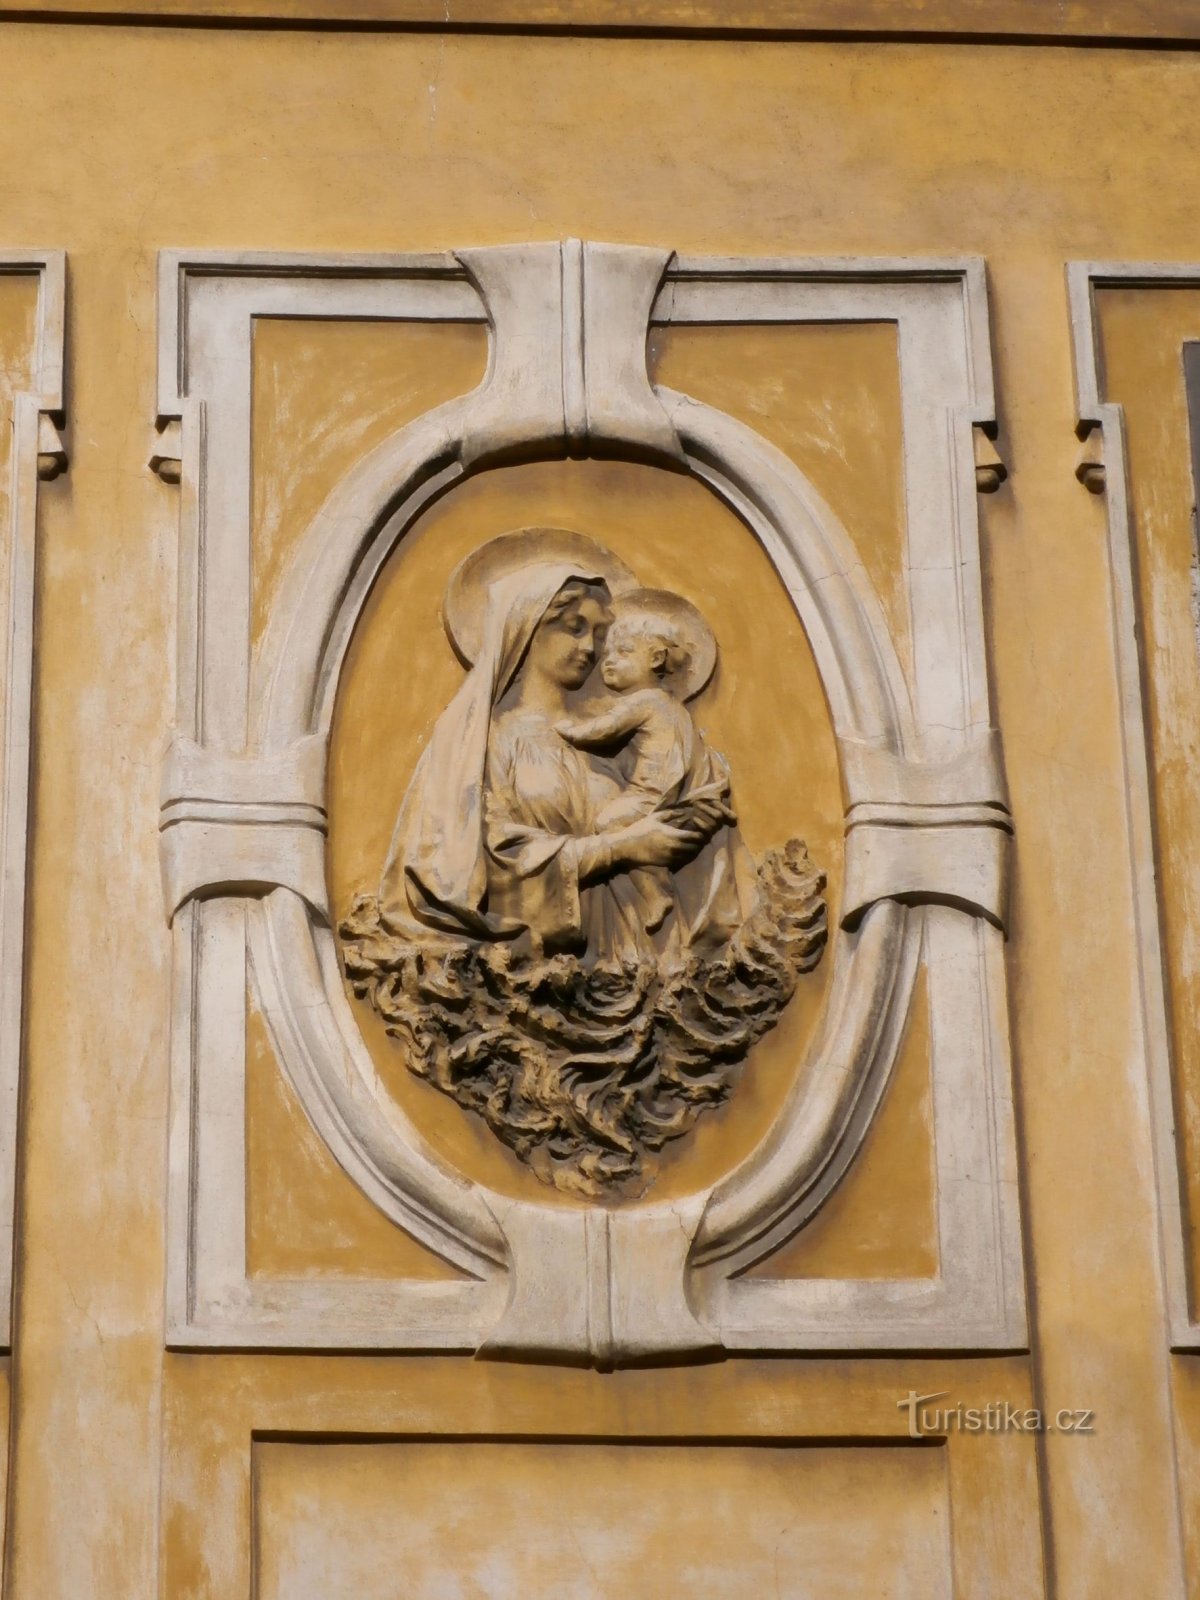 Рельеф Девы Марии с младенцем Иисусом на № 59 (Градец Кралове, 2.8.2014 августа XNUMX г.)